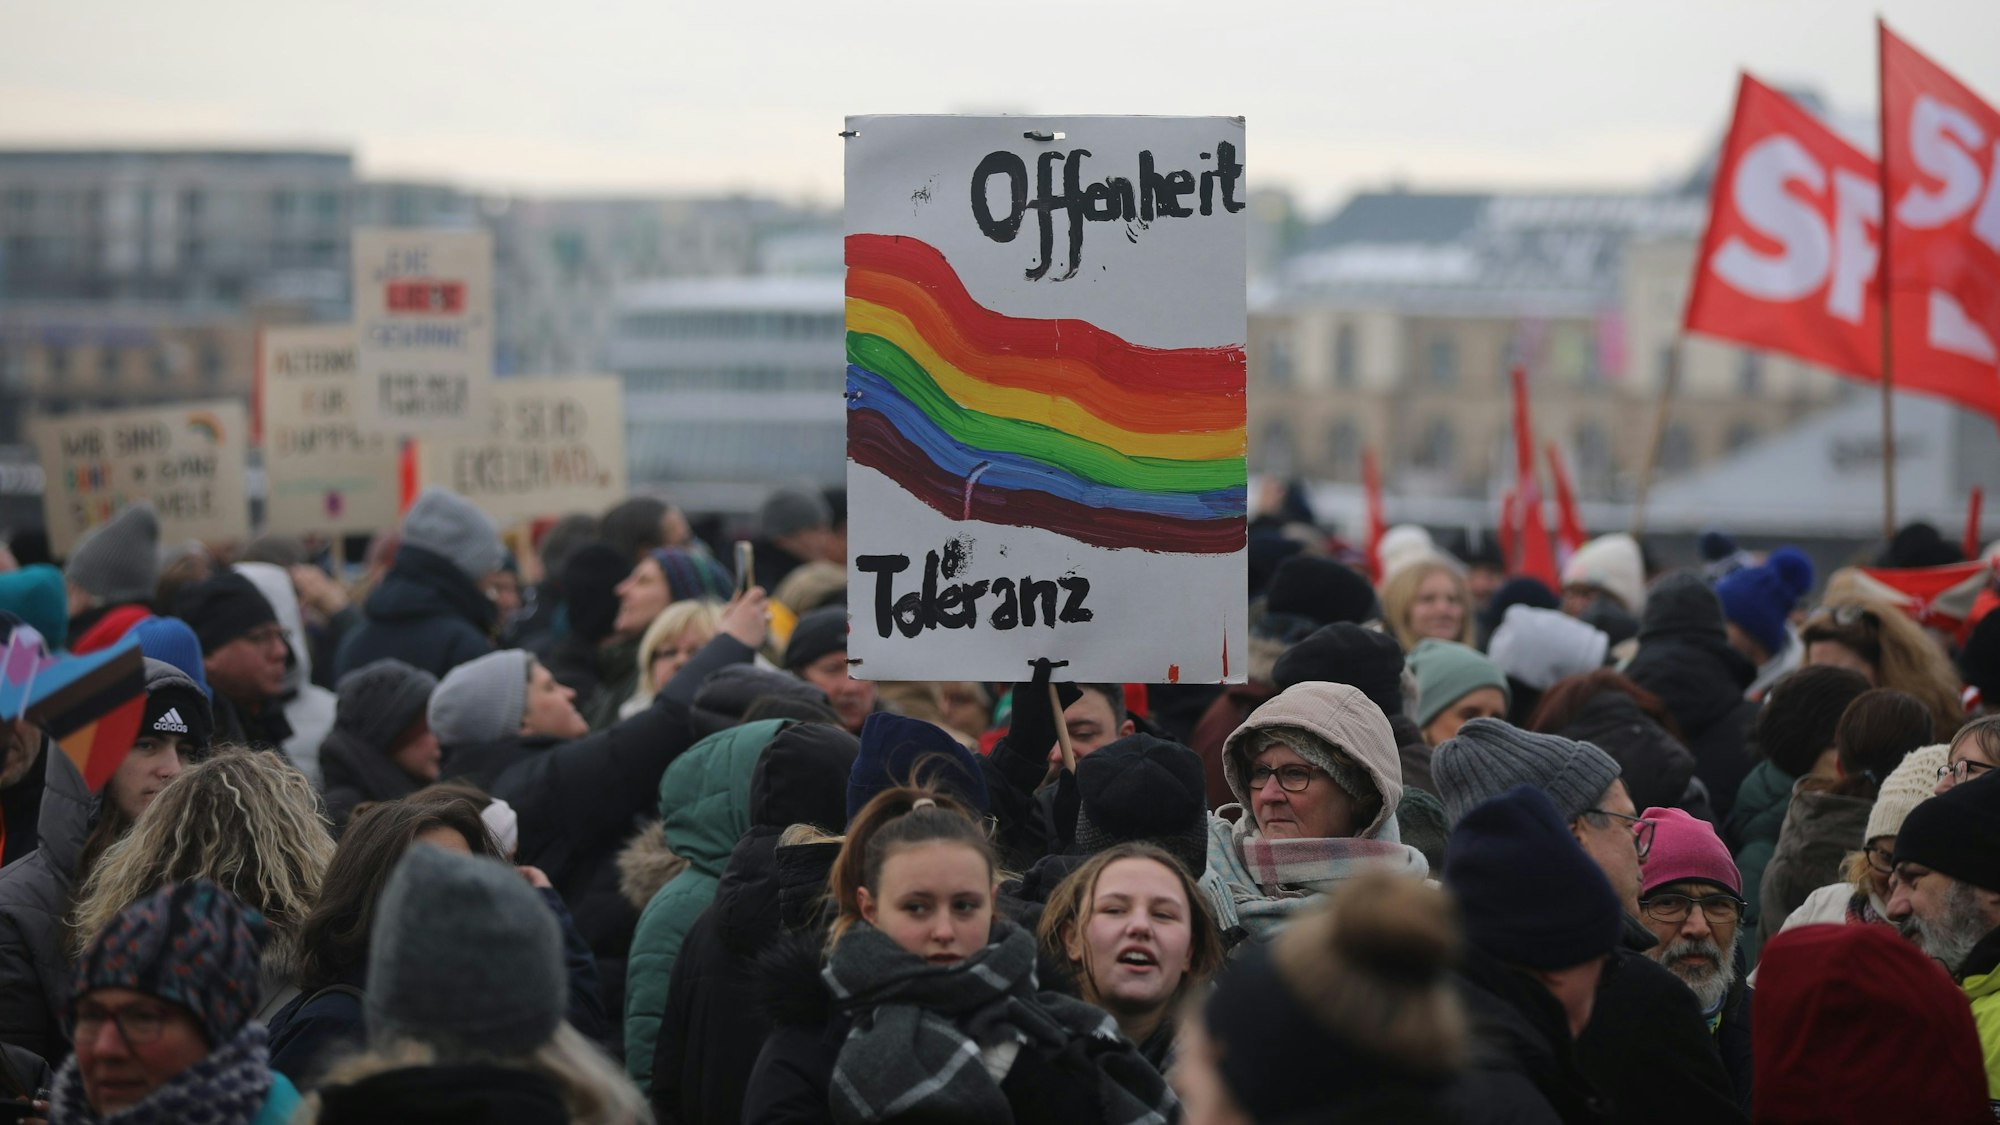 In der Masse von vielen Menschen ist ein Schild mit „Offenheit“ und „Toleranz“ und einem Regenbogen zu sehen.